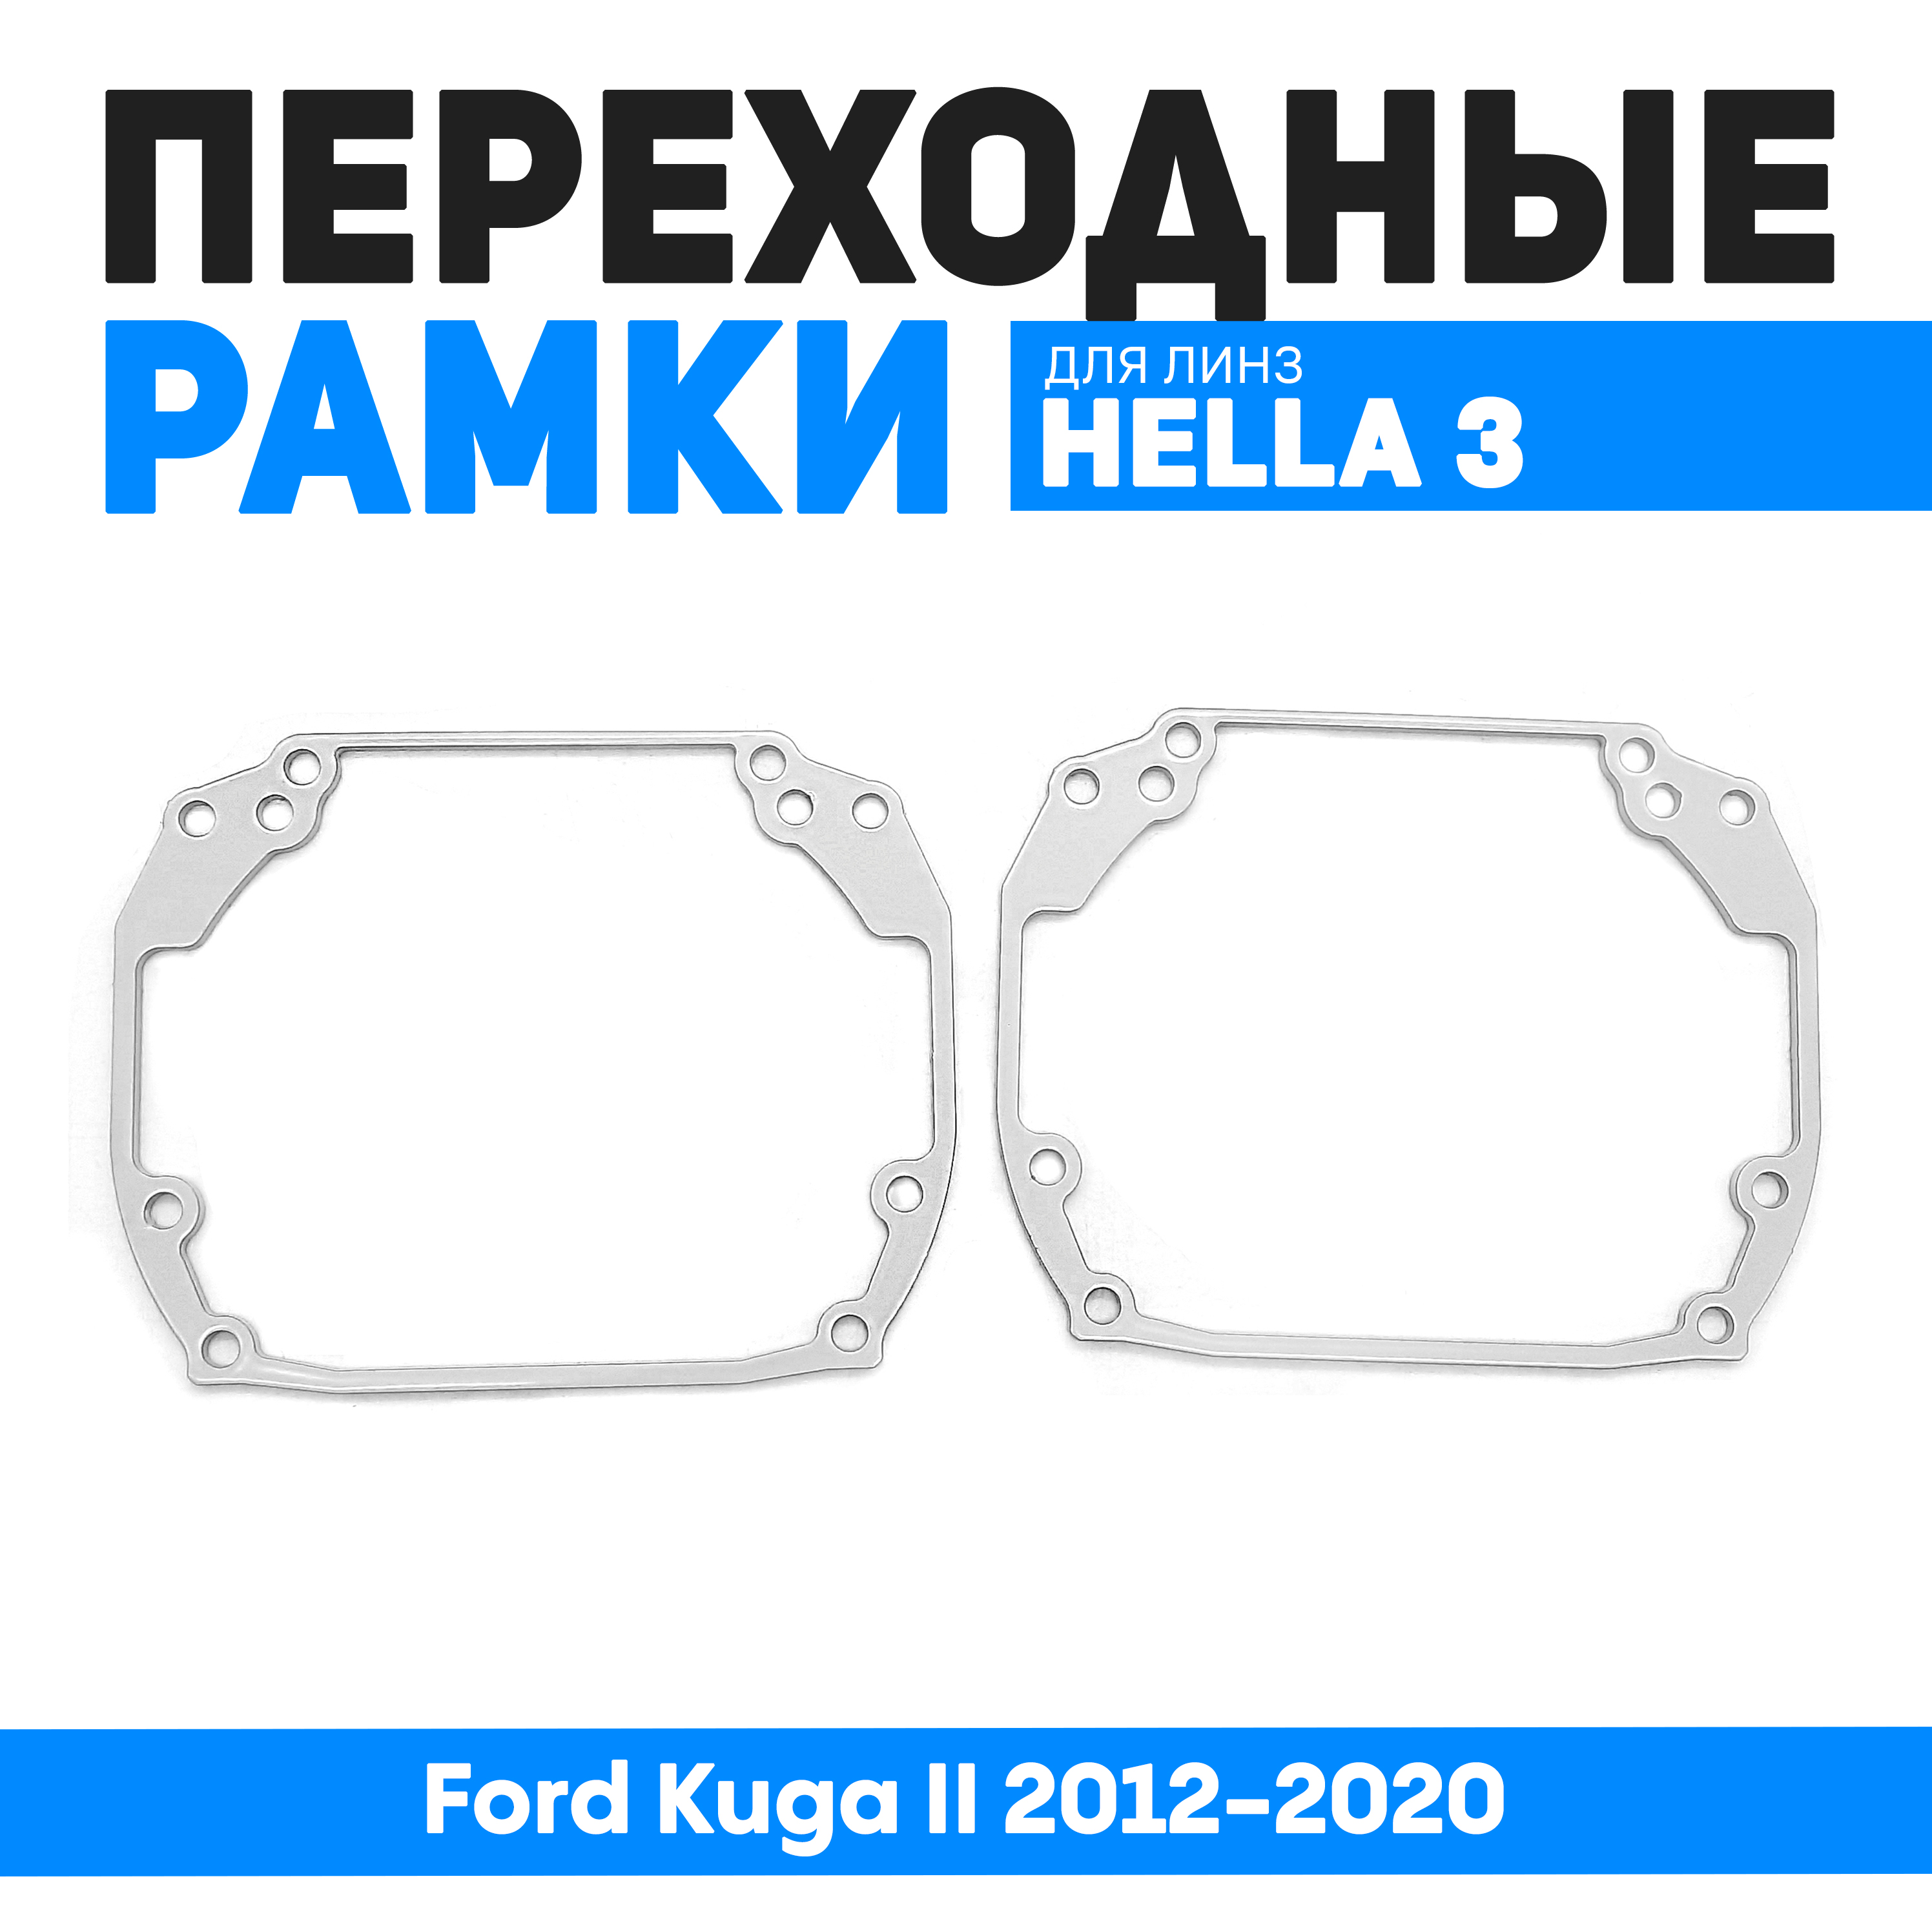 Переходные рамки Bunker-Svet для замены линз Ford Kuga II 2012-2020